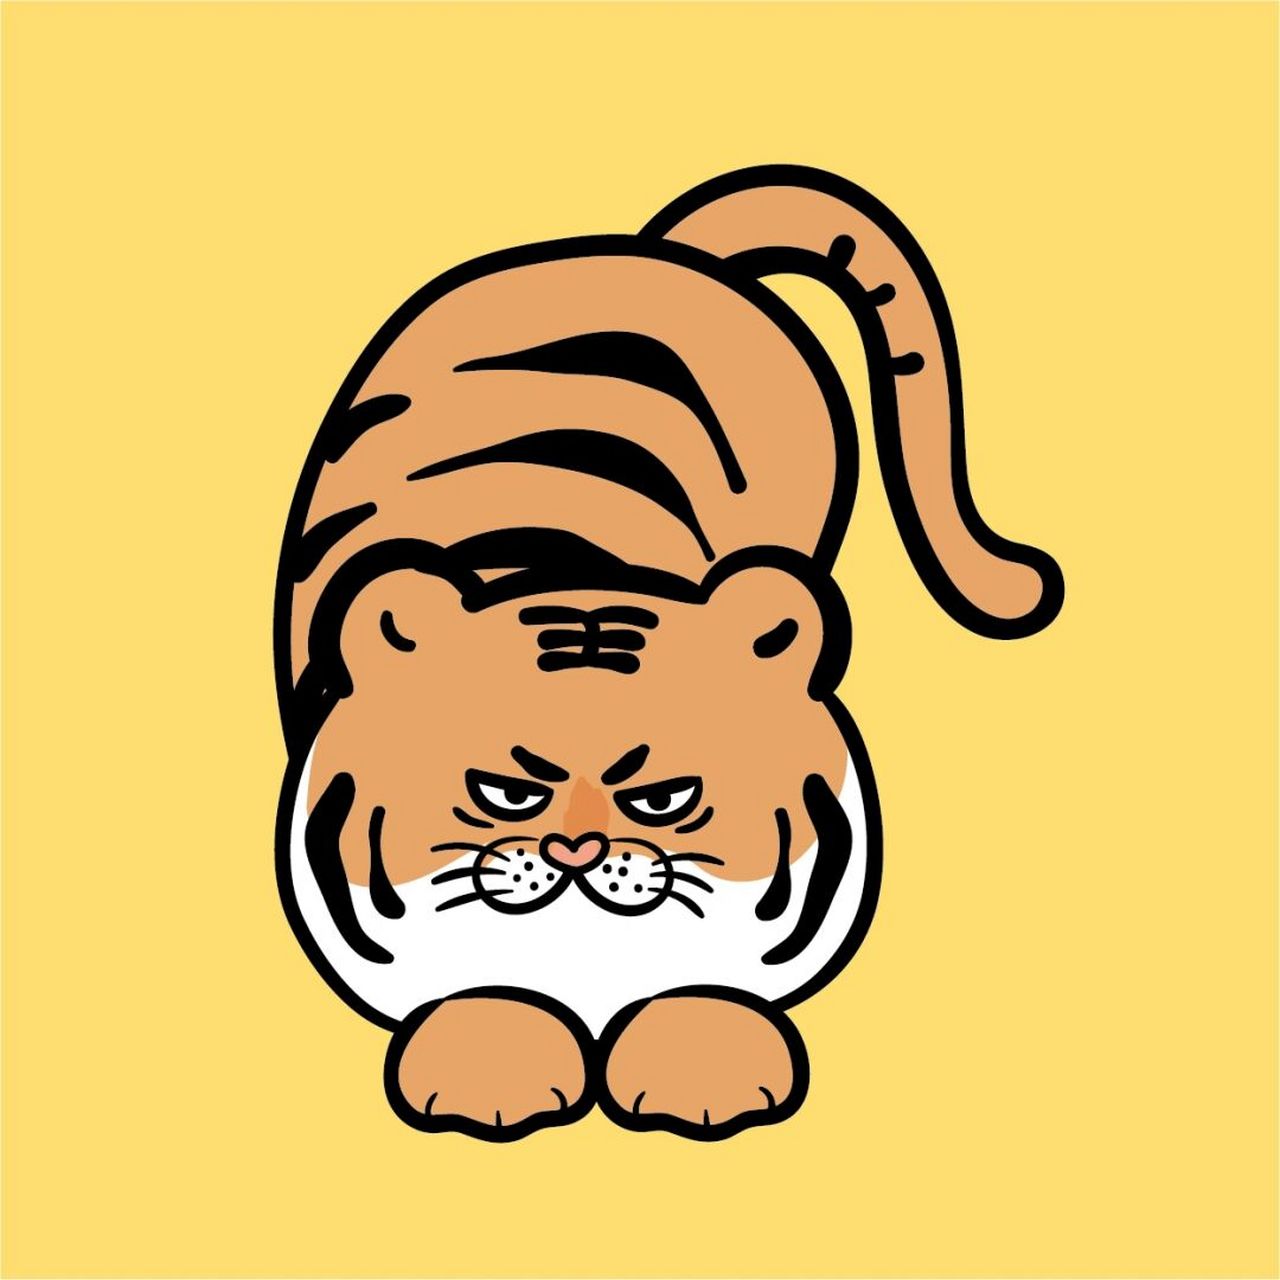 大王是老虎ip表情包卡通插画可爱头像分享 谢谢喜欢 ip大王是老虎